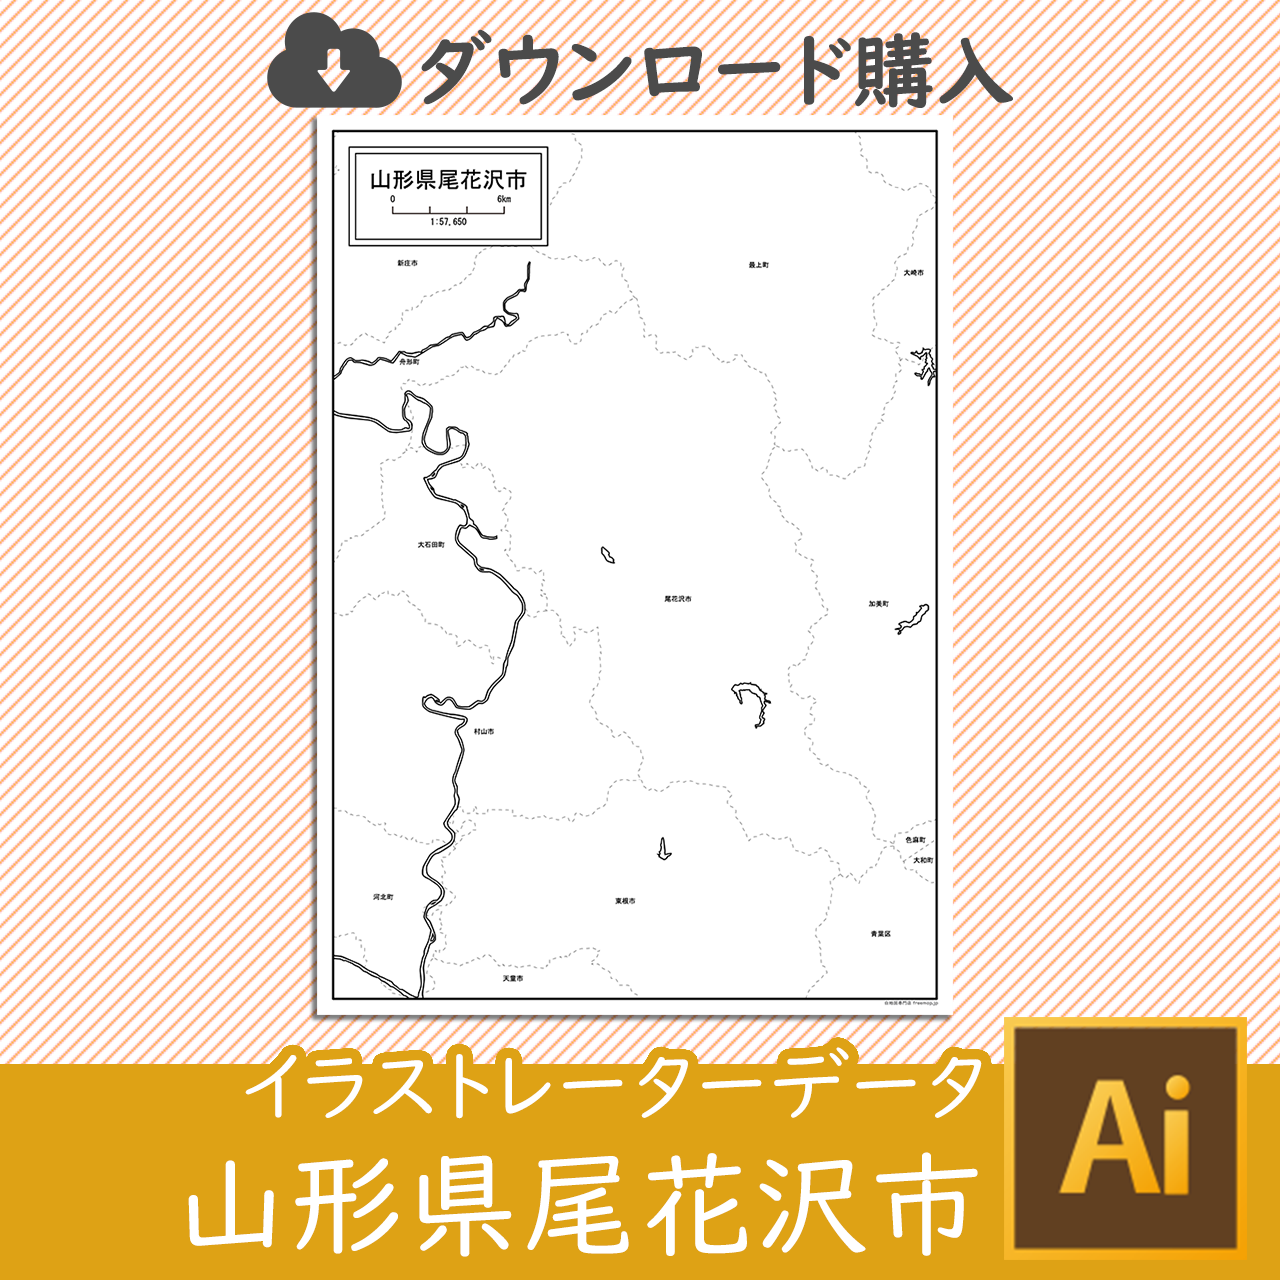 尾花沢市のaiデータのサムネイル画像